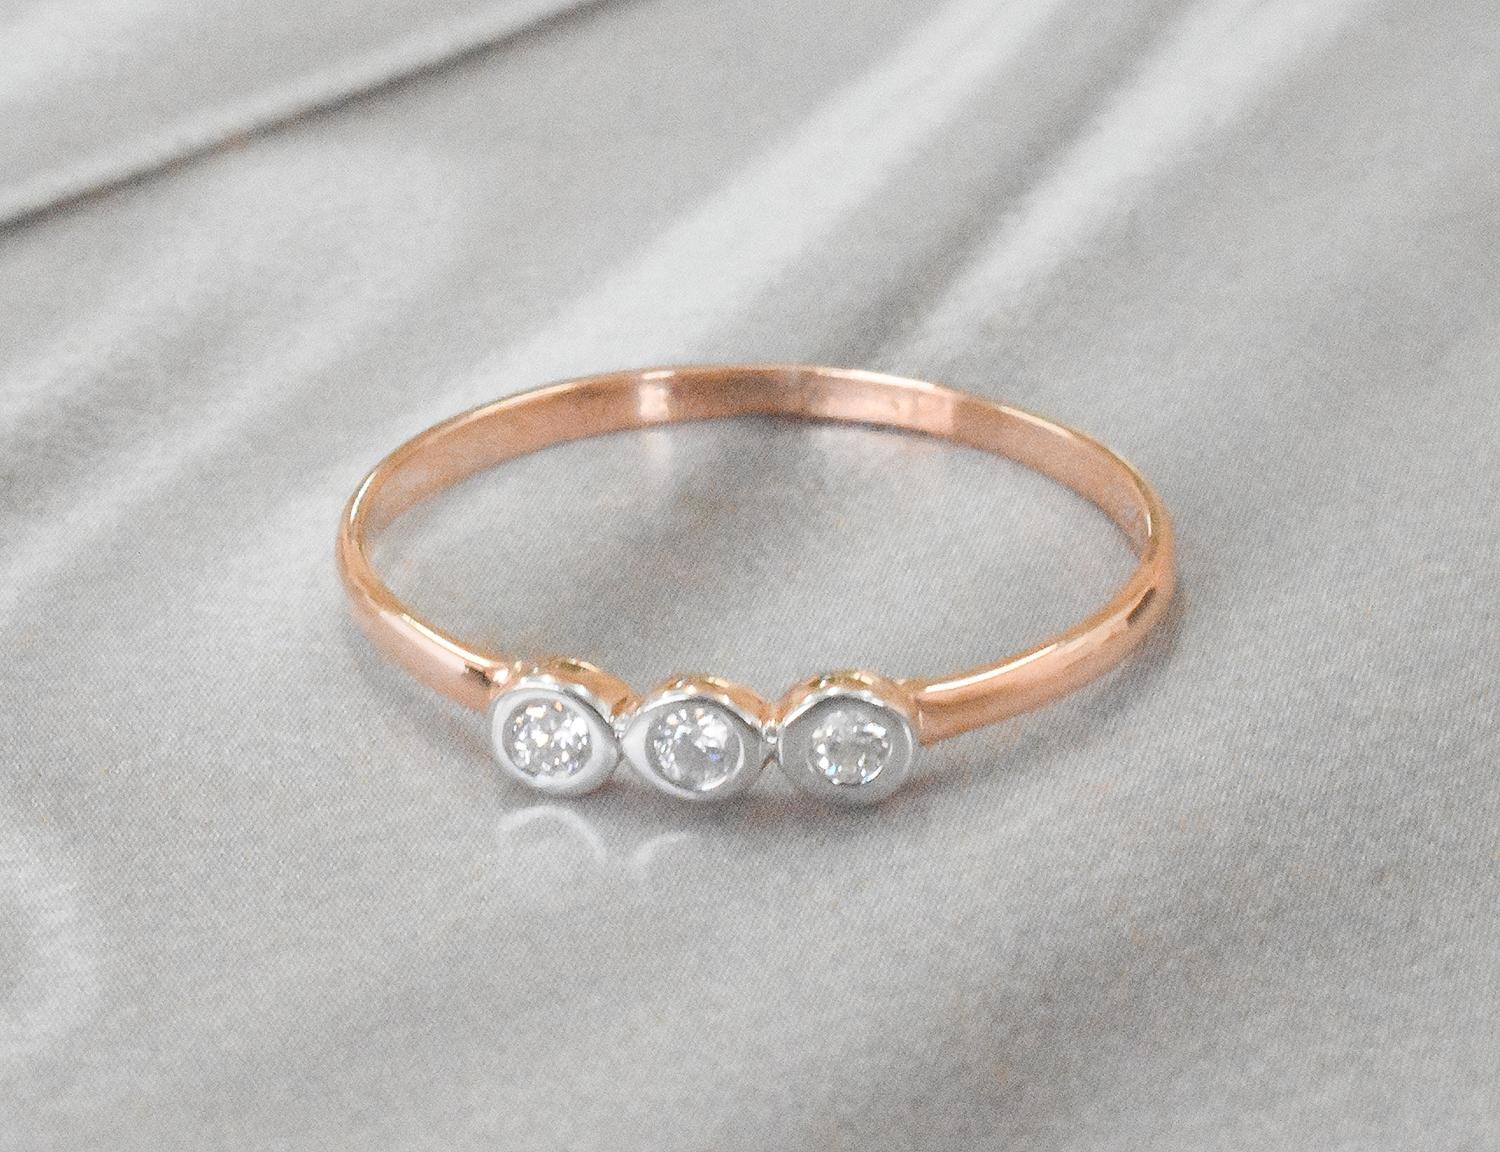 For Sale:  14k Gold Diamond 1.9 mm Ring Bezel Setting Three Diamond Ring Trio Diamond Ring 6